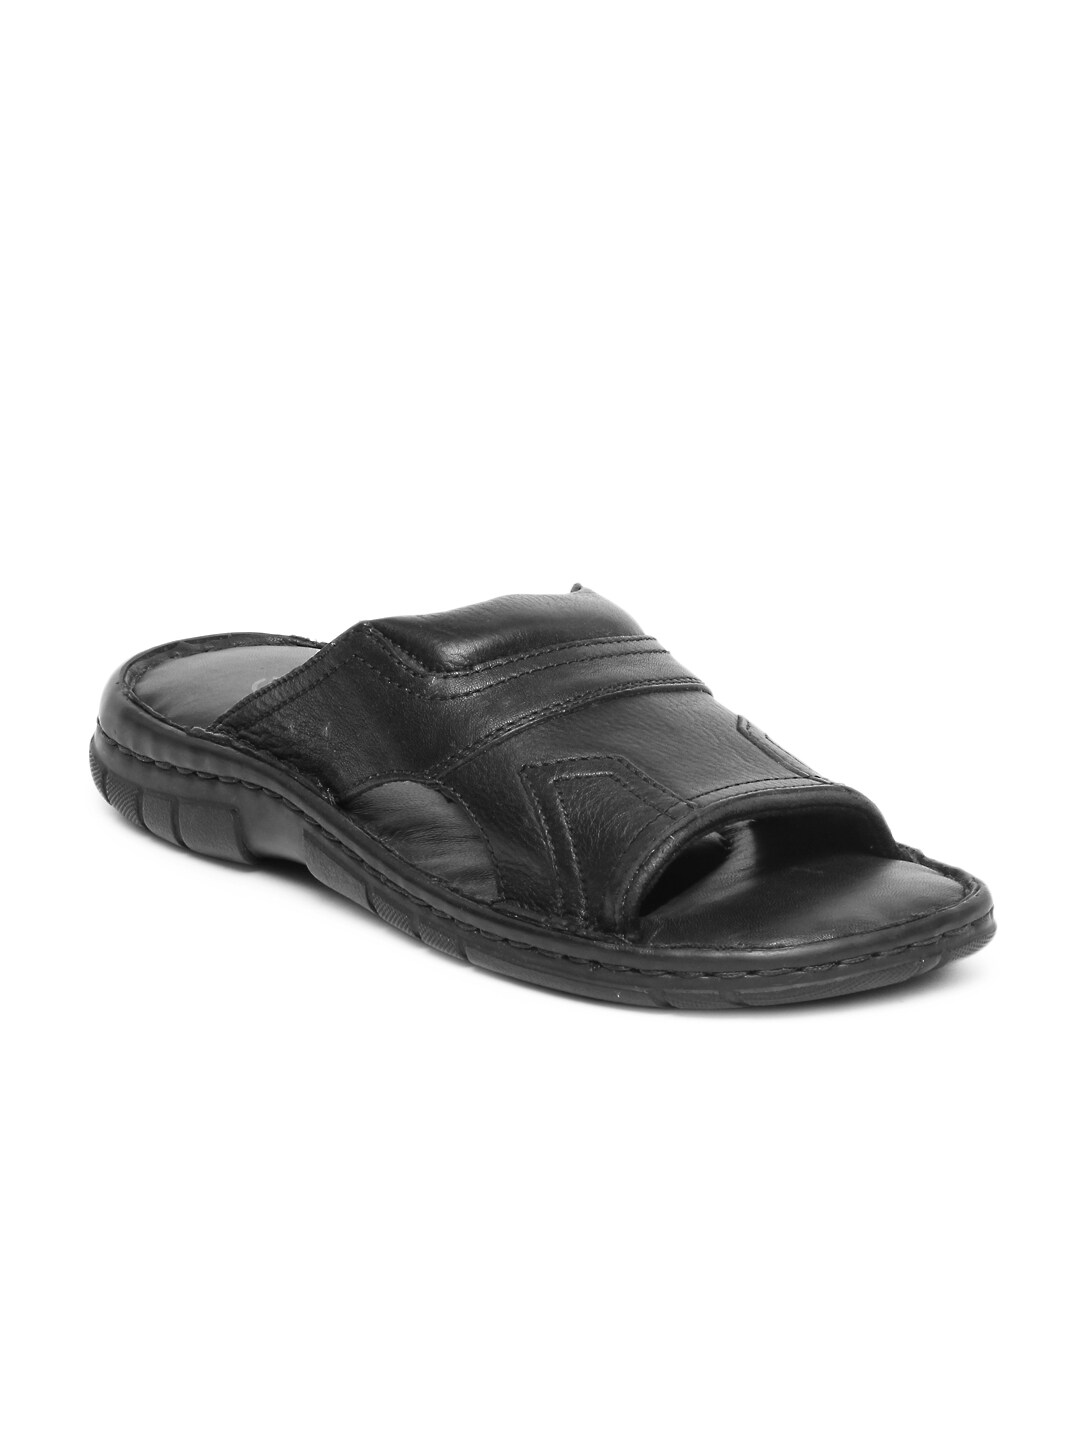 Clarks Men Black Leather Sandals